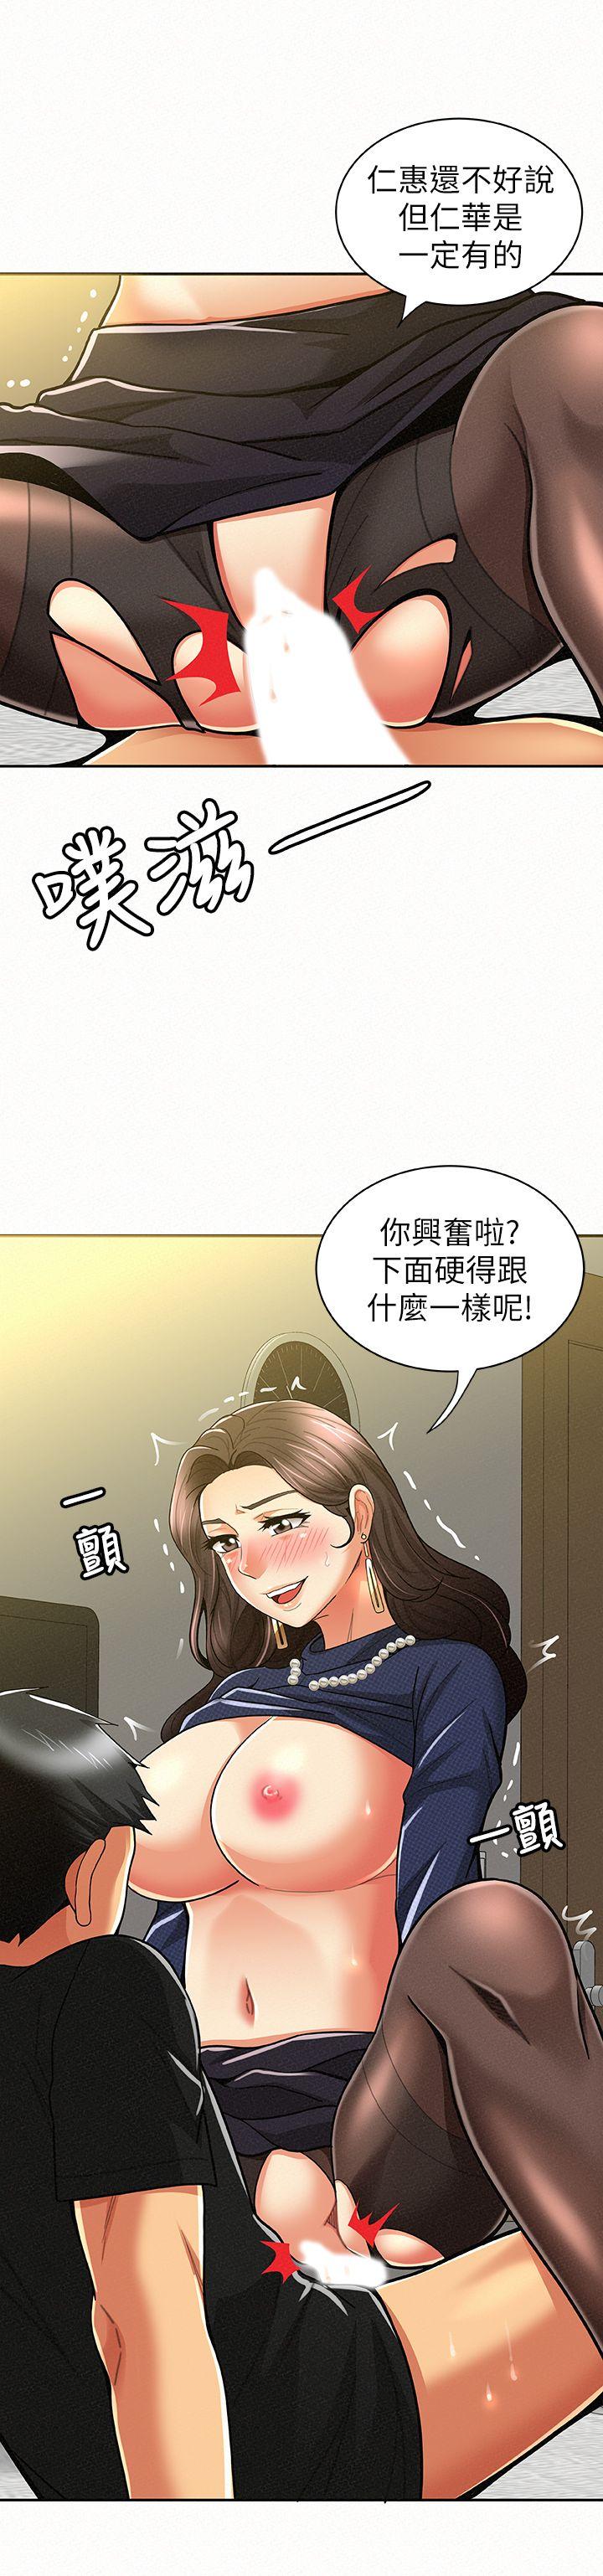 韩国污漫画 報告夫人 第13话-夫人的嫉妒心 5